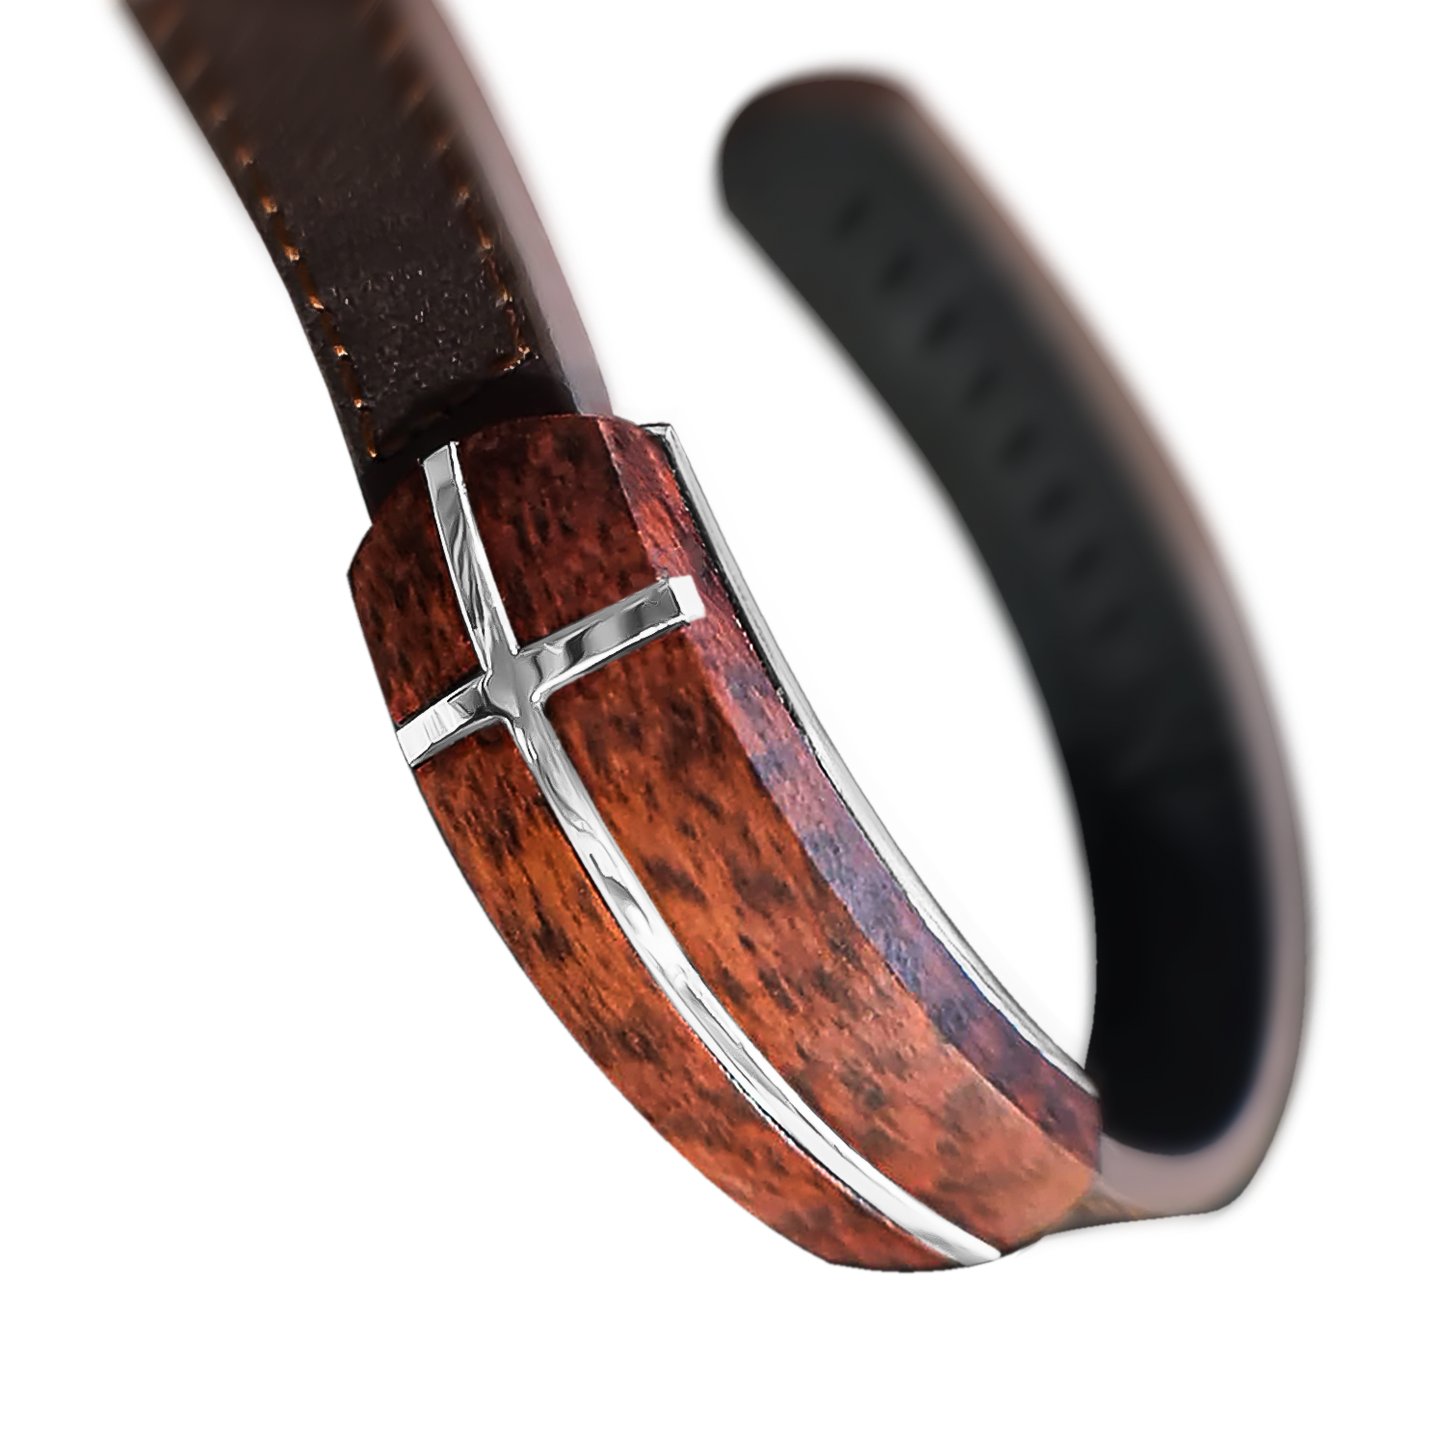 22 CM Stainless Steel Cross Leopard Wood Leather Bracelet